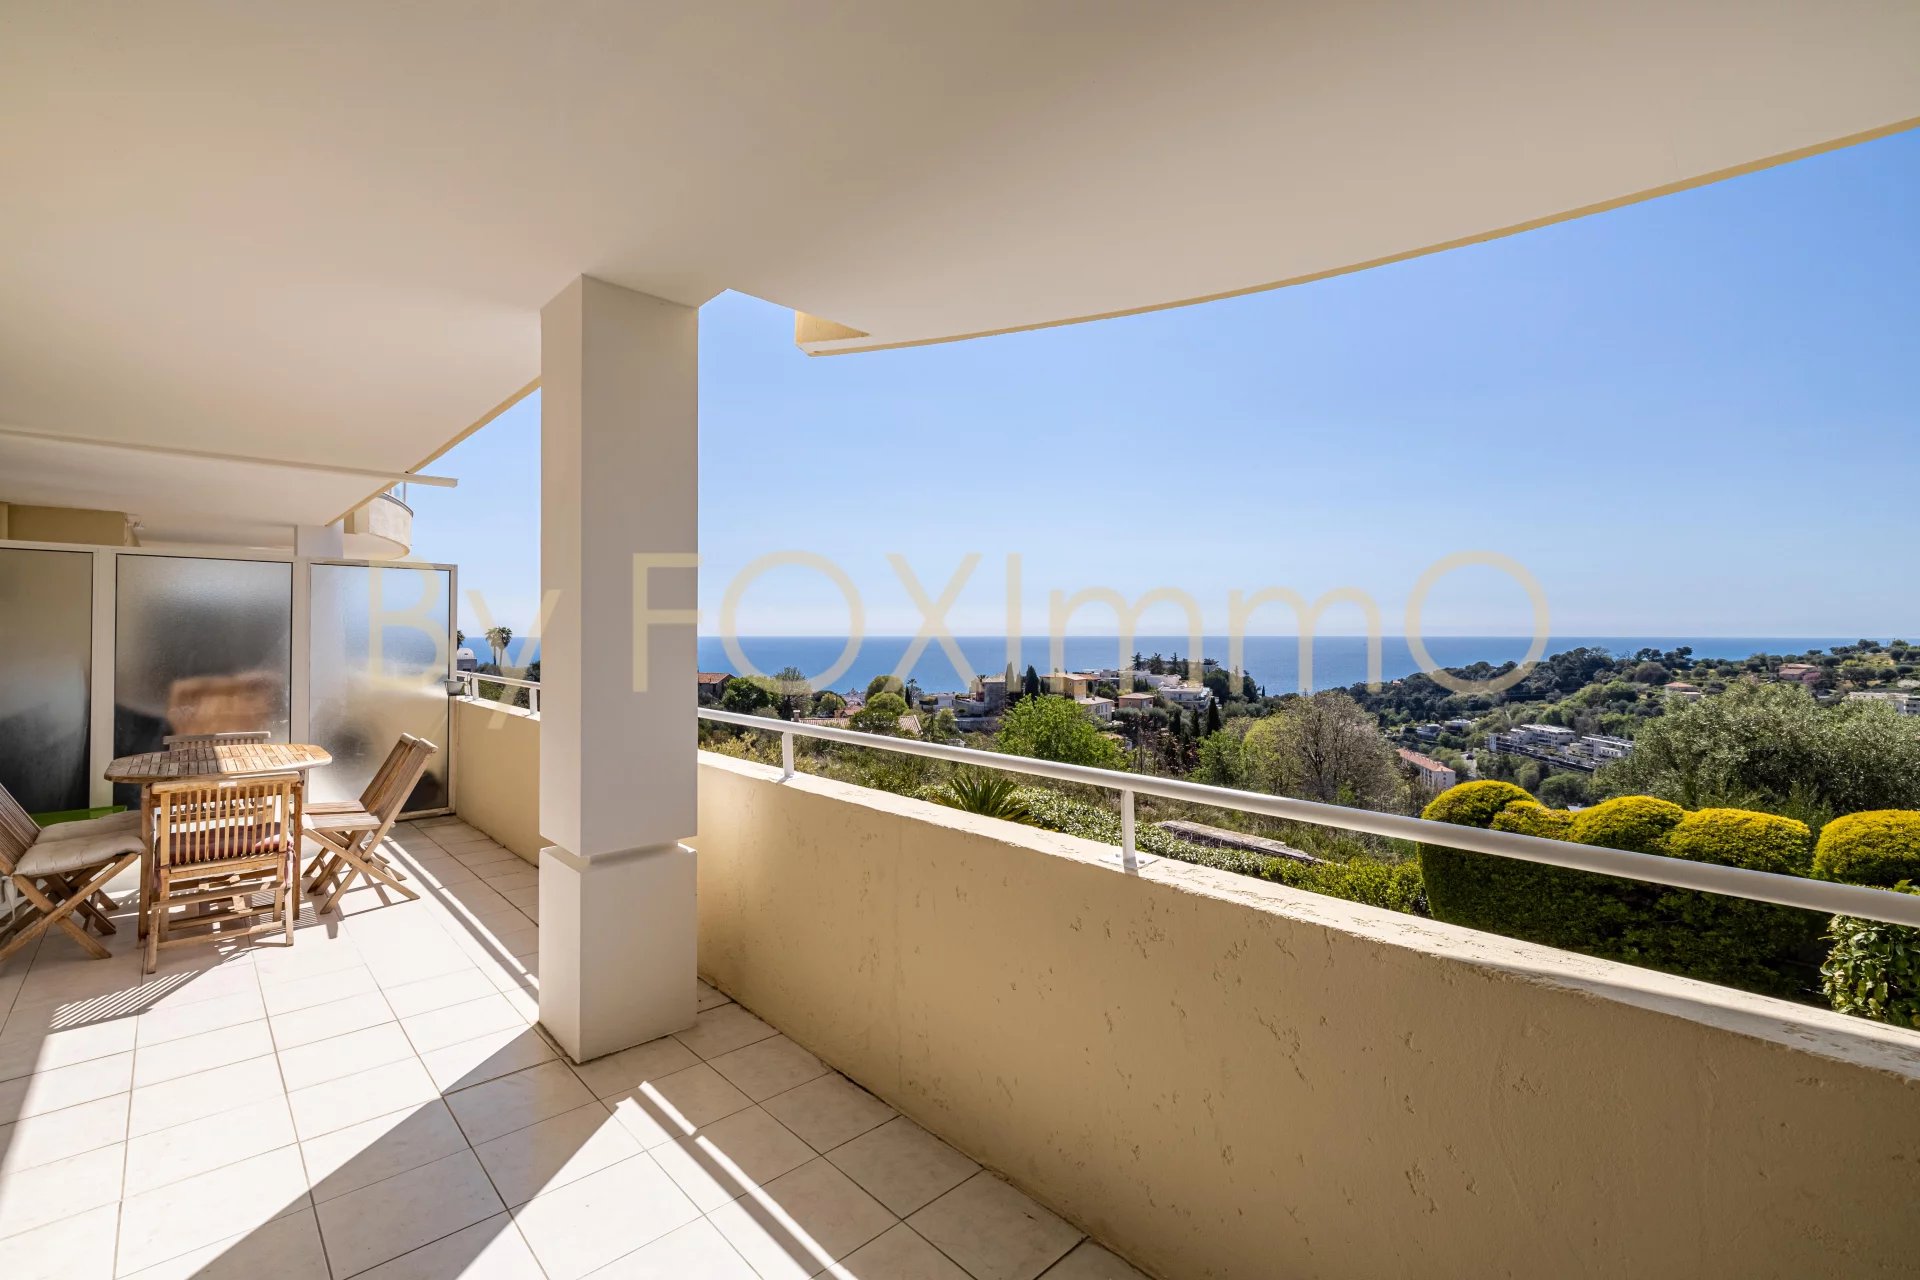 Sur la Côte d'Azur, superbe appartement 3 pièces  en très bon état, vue panoramique mer sans vis à vis avec parking privatif